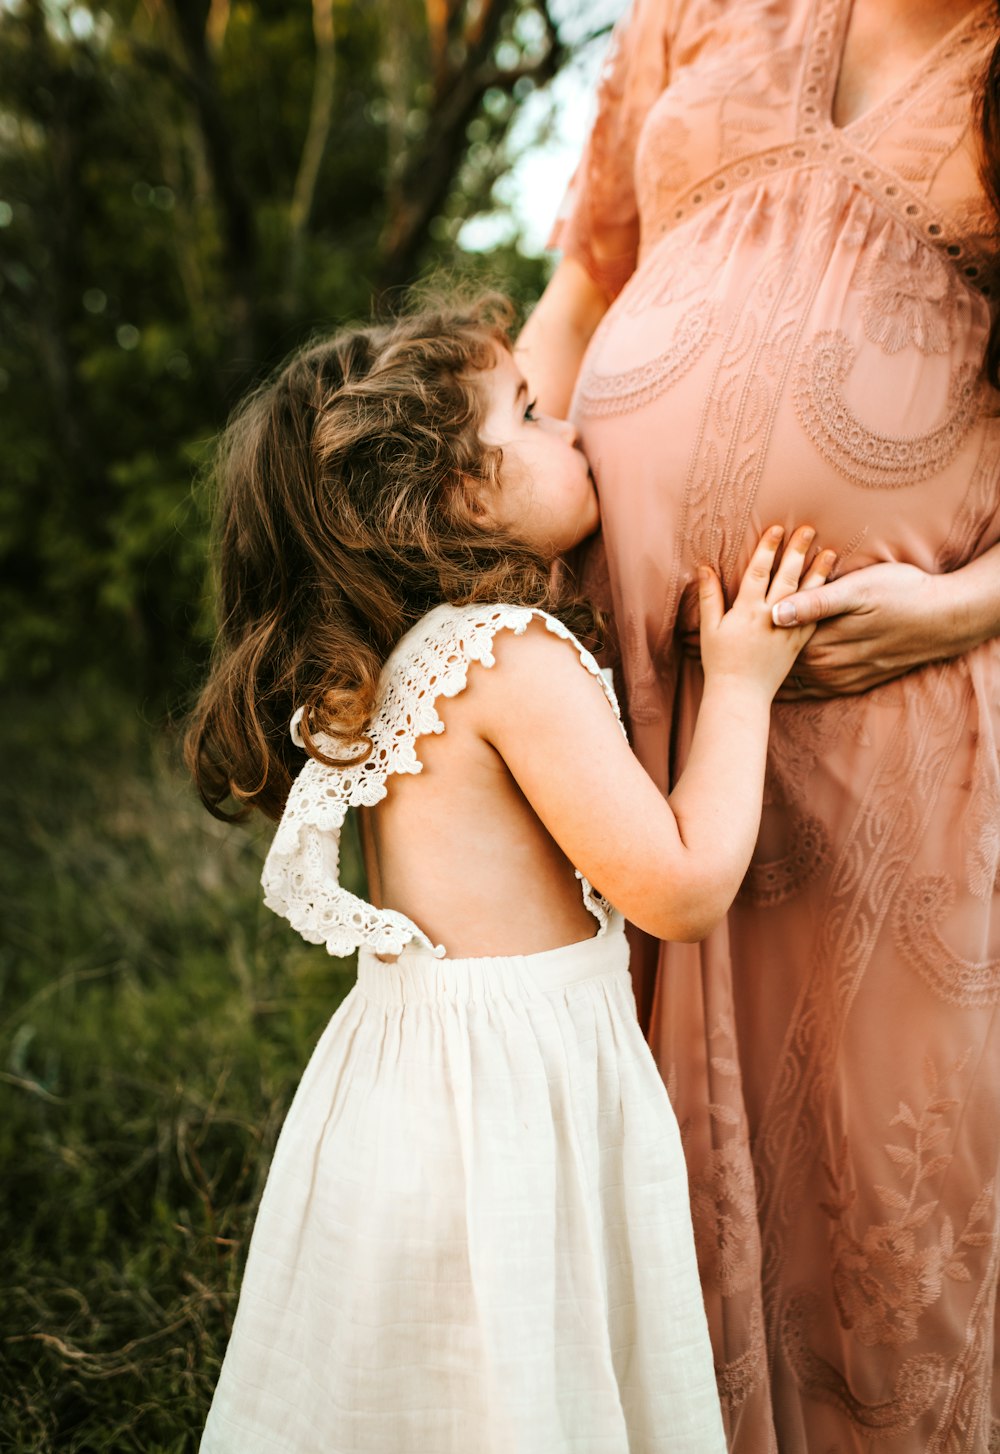 女性のおなかにキスする子供の写真 Unsplashで見つける家族の無料写真